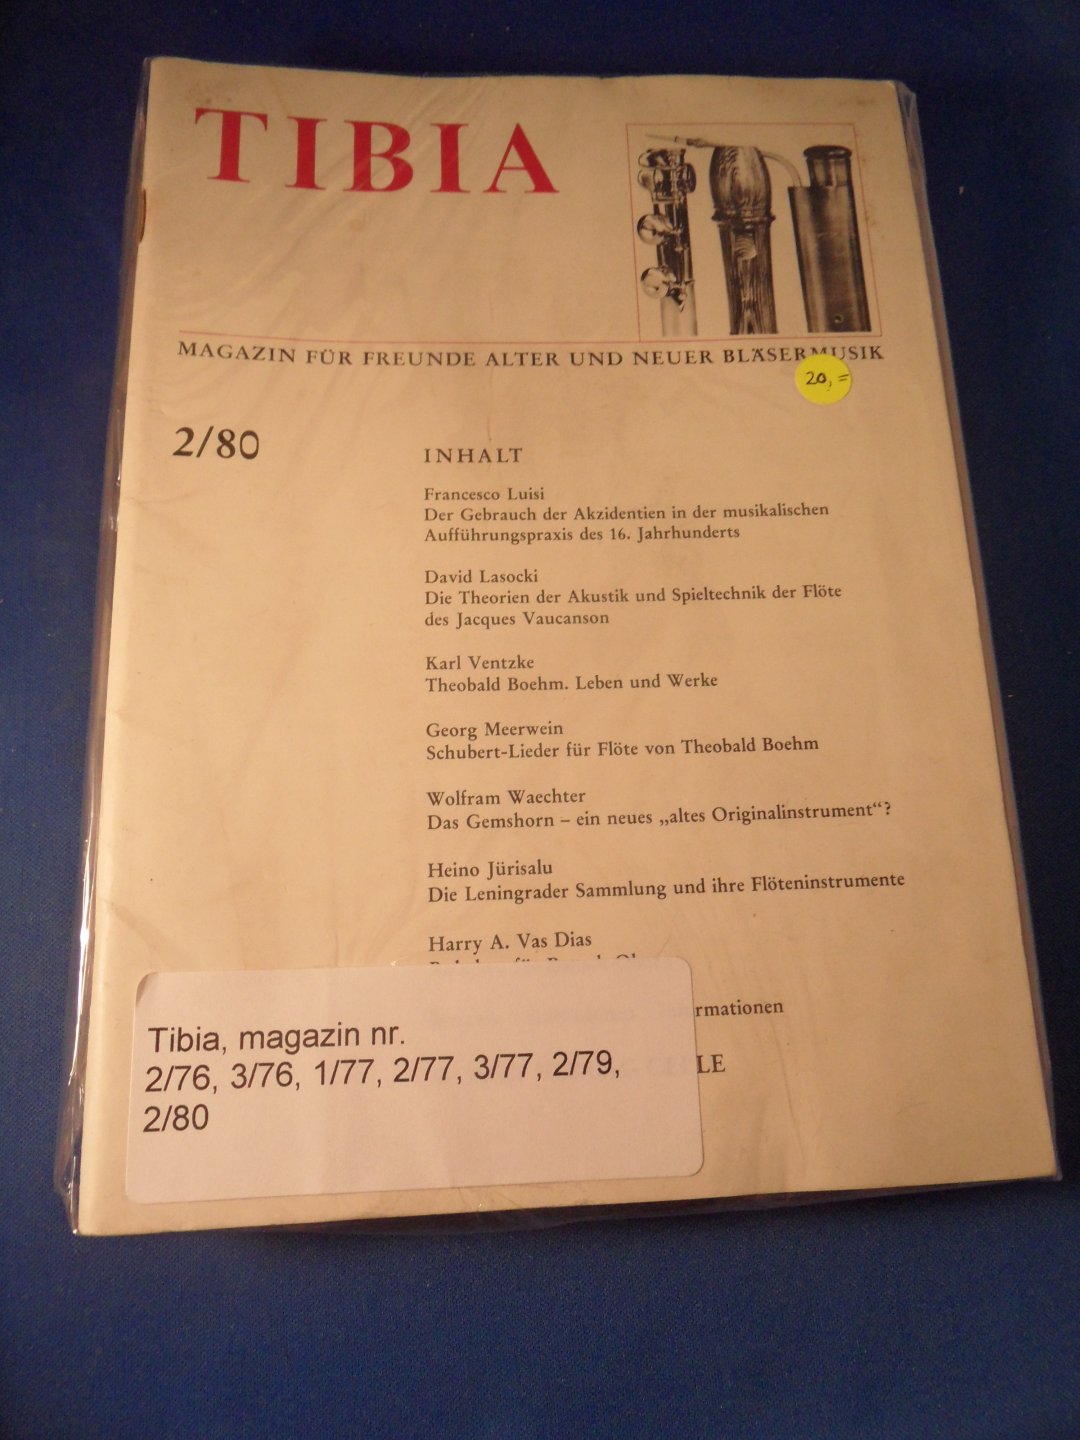 Freunde alter und neuer Bläsermusik - Tibia, magazin nr. 2/76, 3/76, 1/77, 2/77, 3/77, 2/79, 2/80